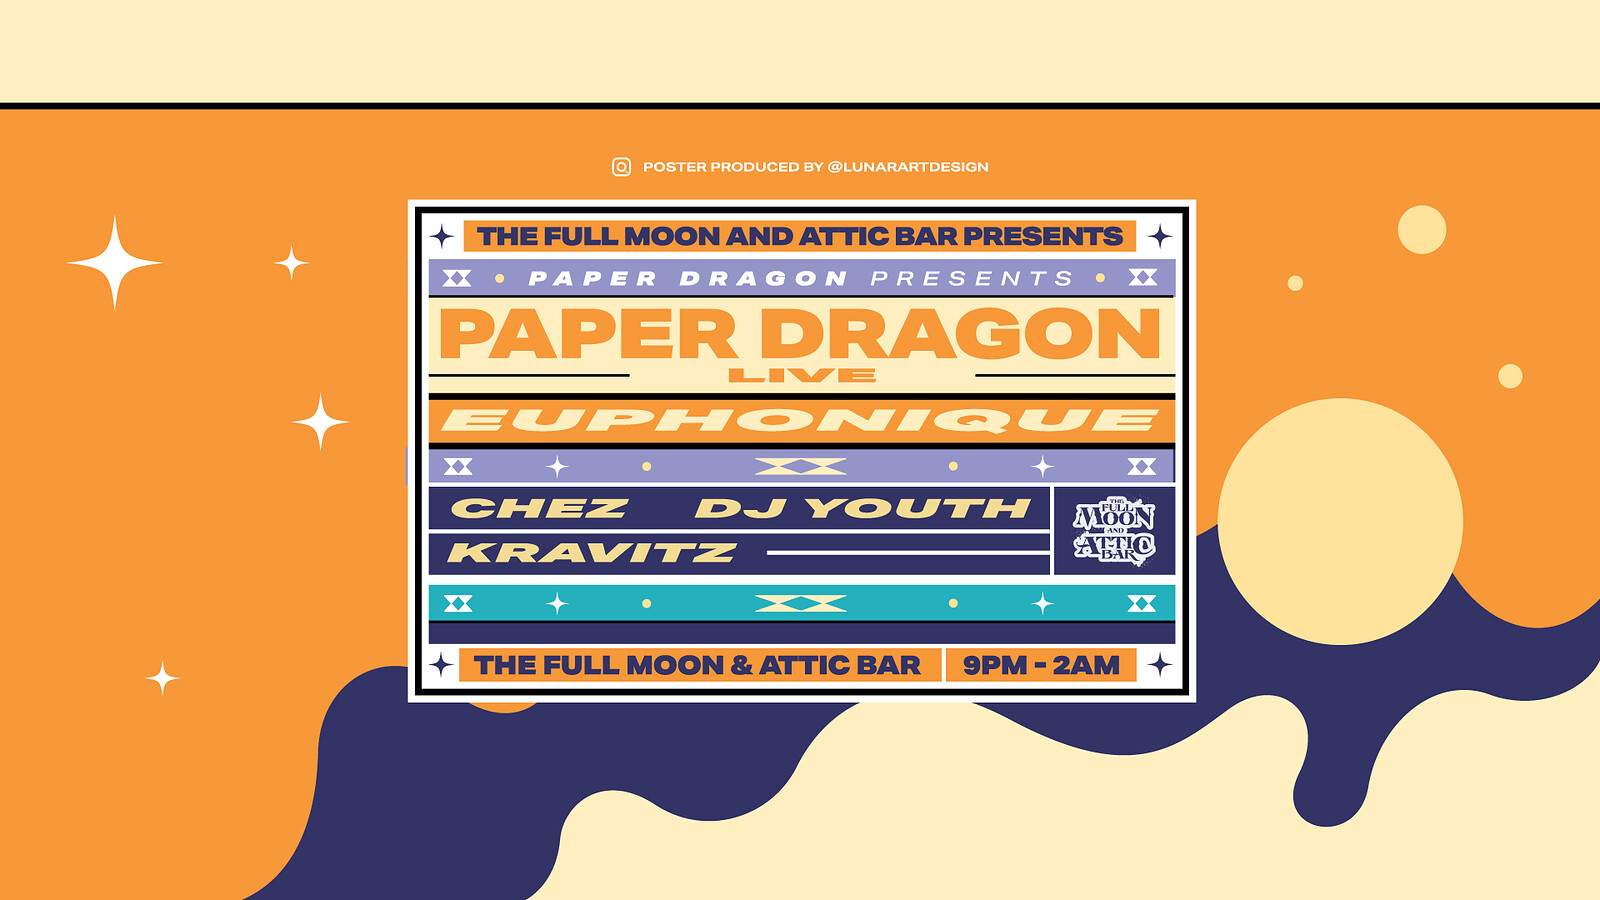 Paper Dragon , Euphonique & more | Attic Bar at The Full Moon & Attic Bar